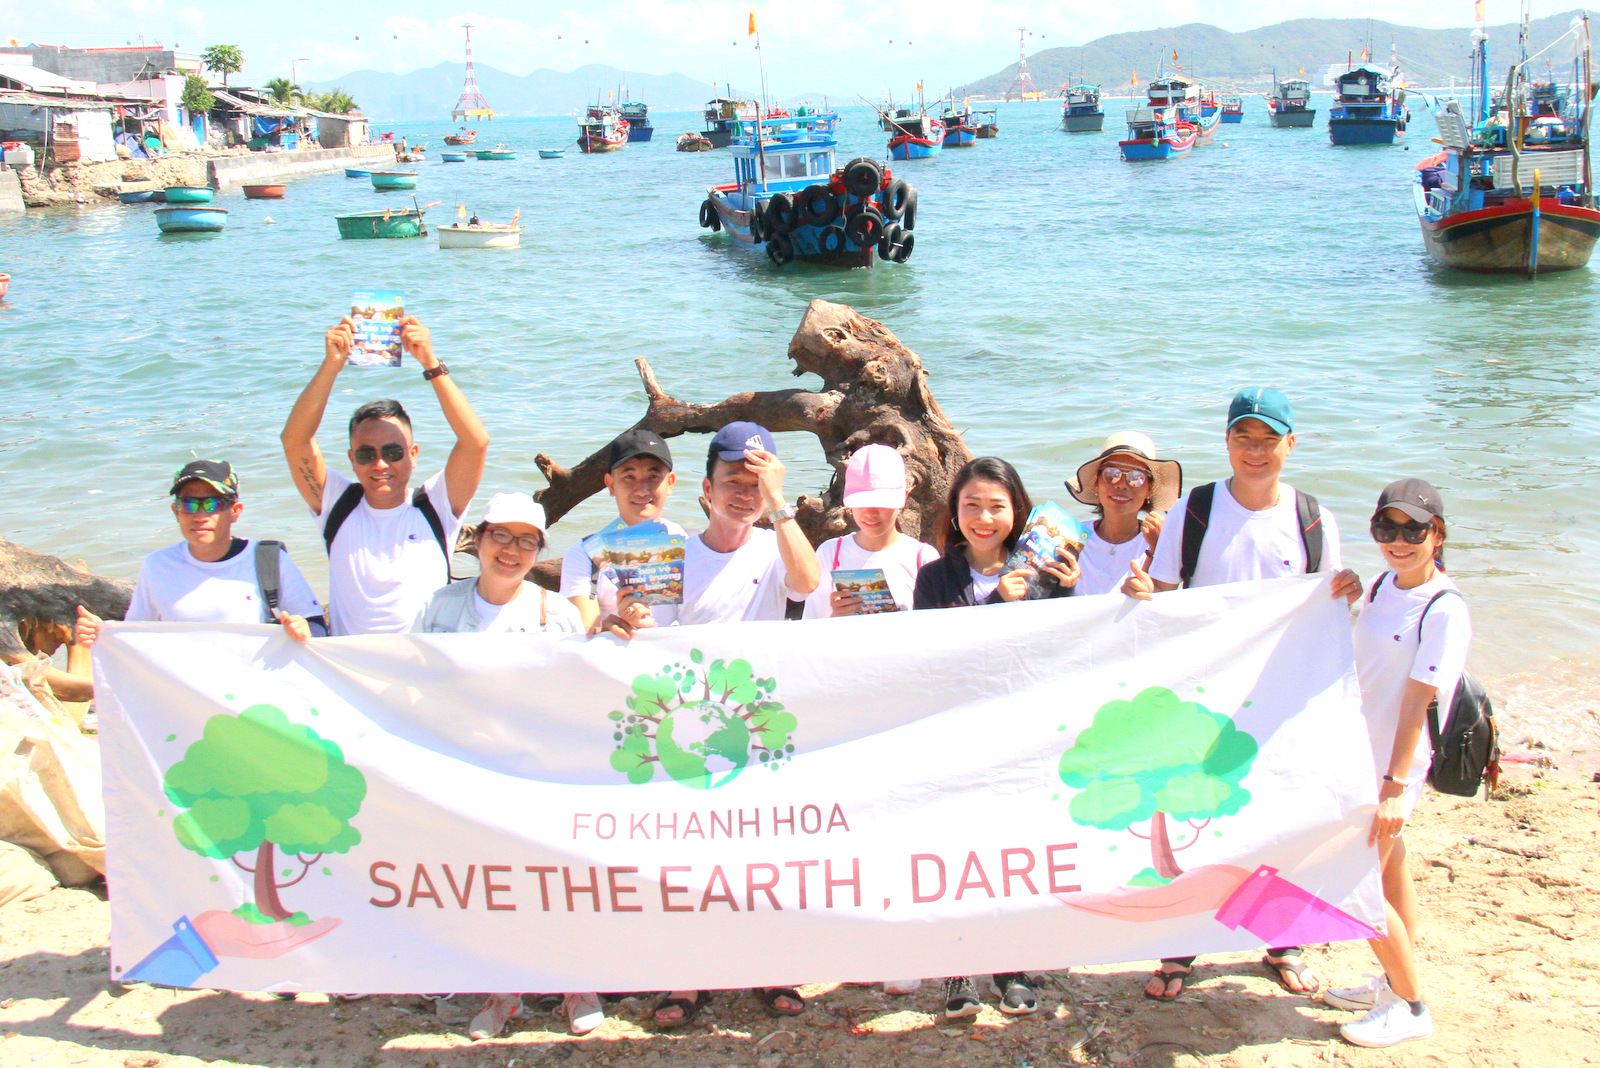   Các thành viên FOM Khánh Hòa với thông điệp kêu gọi bảo vệ môi trường